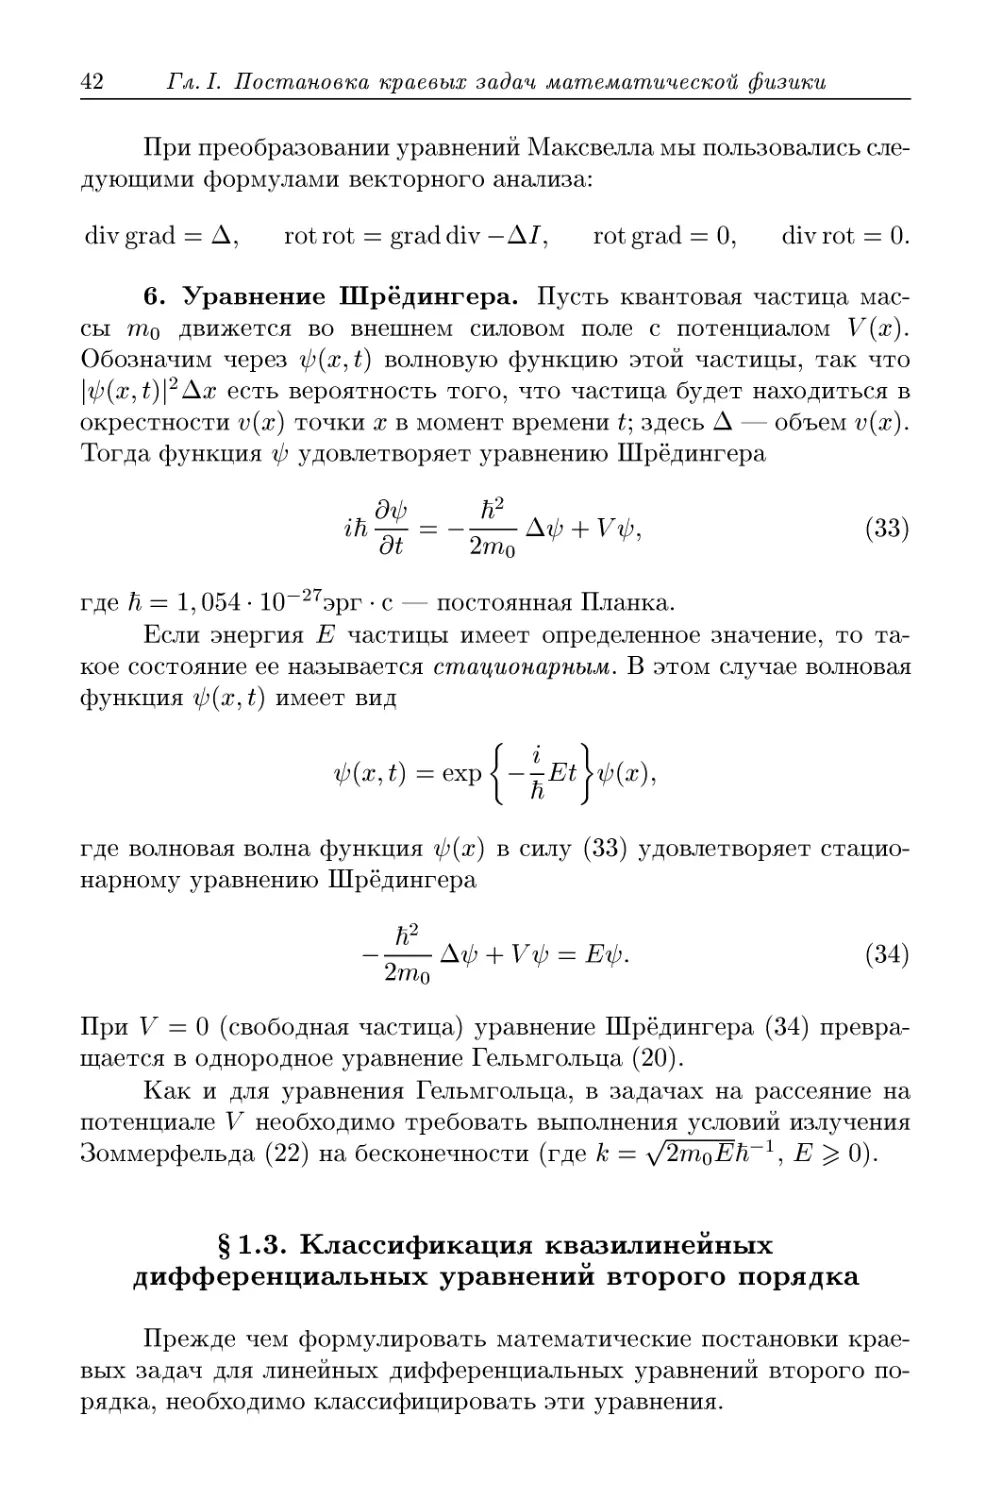 § 1.3. Классификация квазилинейных дифференциальных уравнений второго порядка